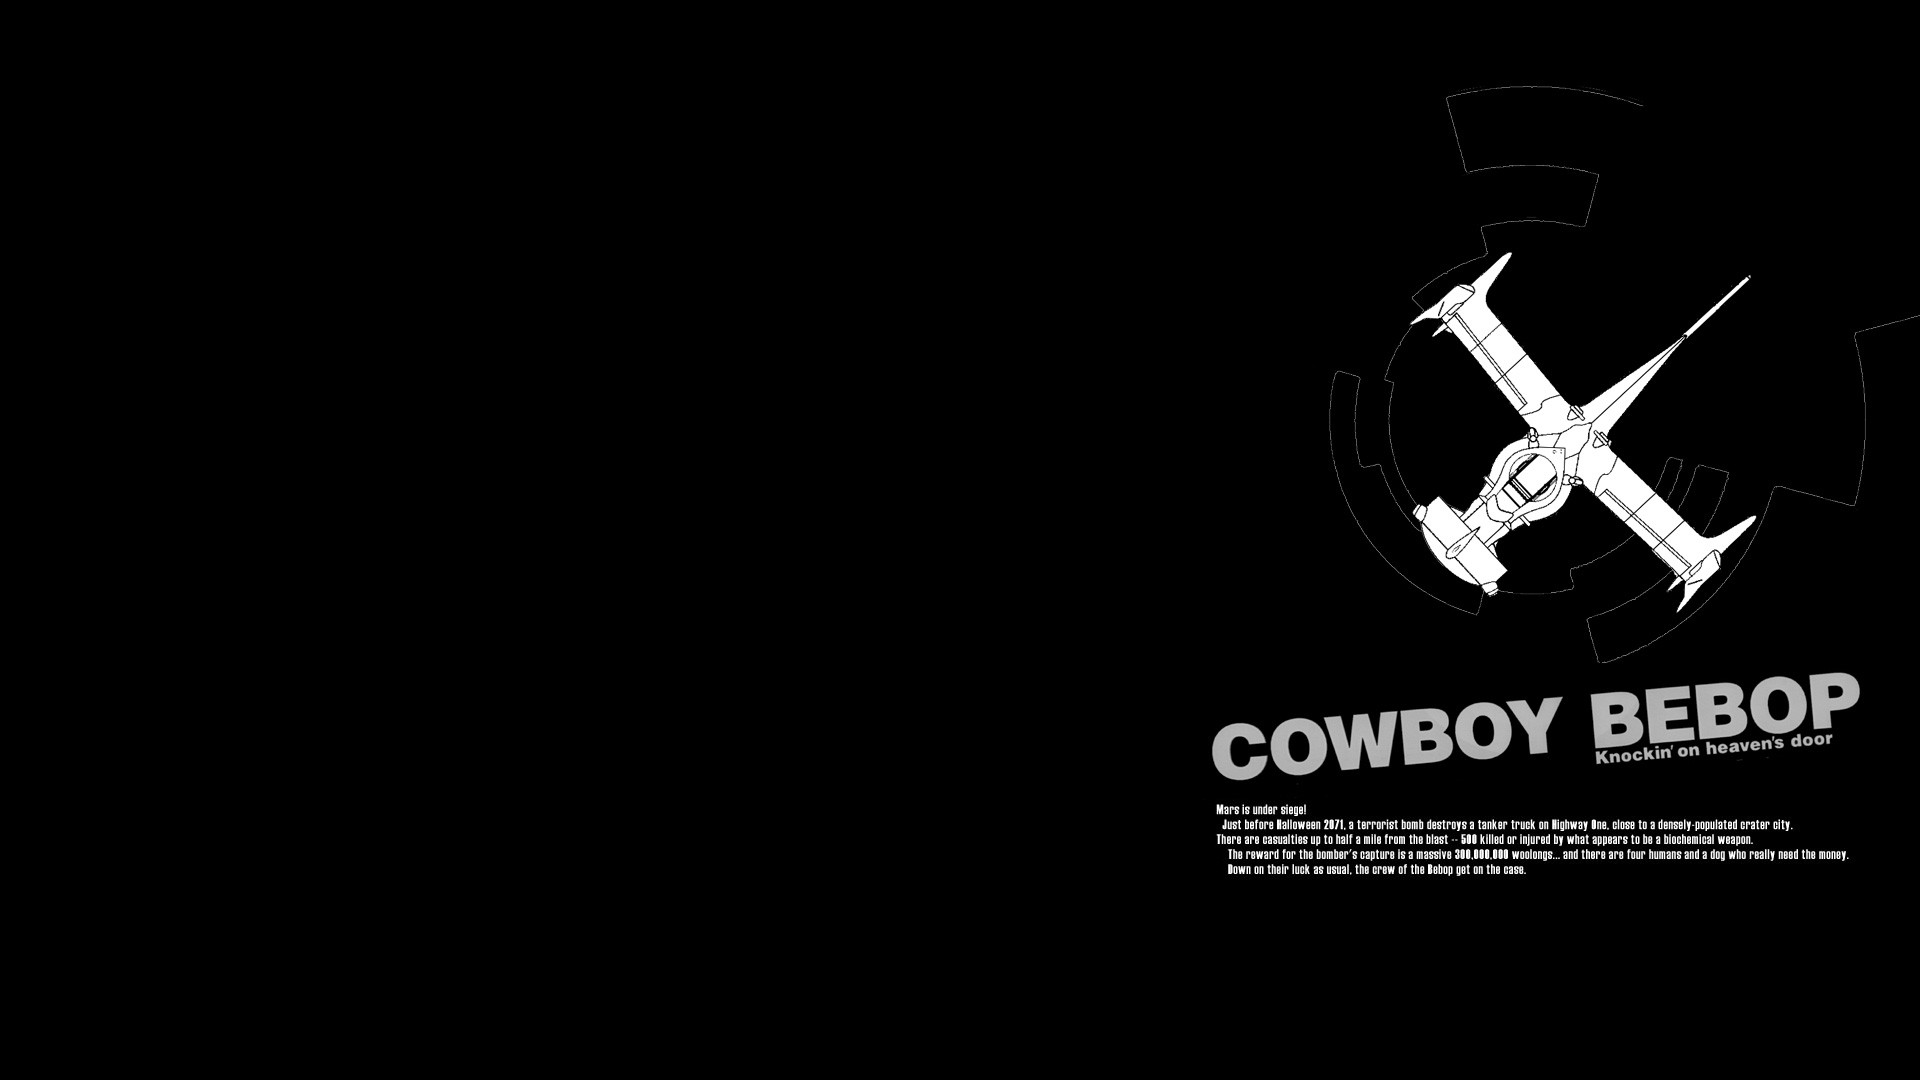 Cowboy Bebop HD Wallpaper | 1920x1080 | ID:39710